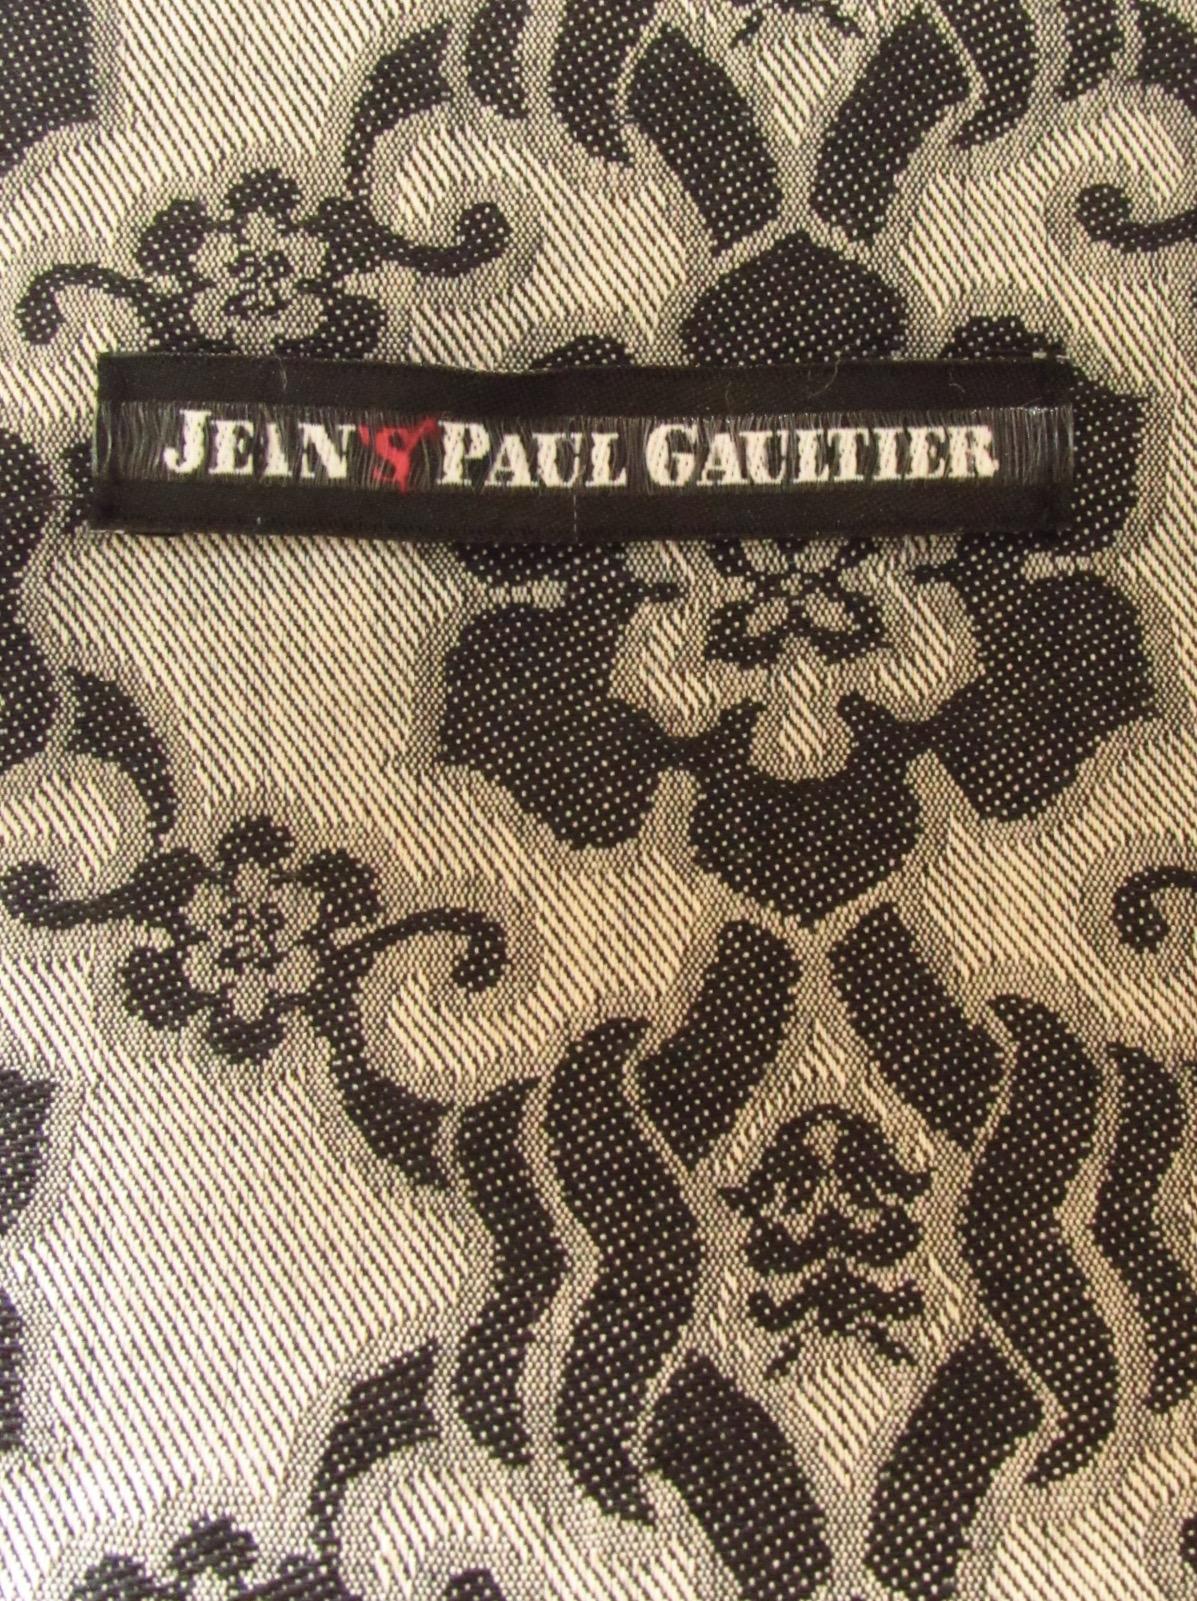 Jean Paul Gaultier Lace Pattern Sailor Short For Sale 1